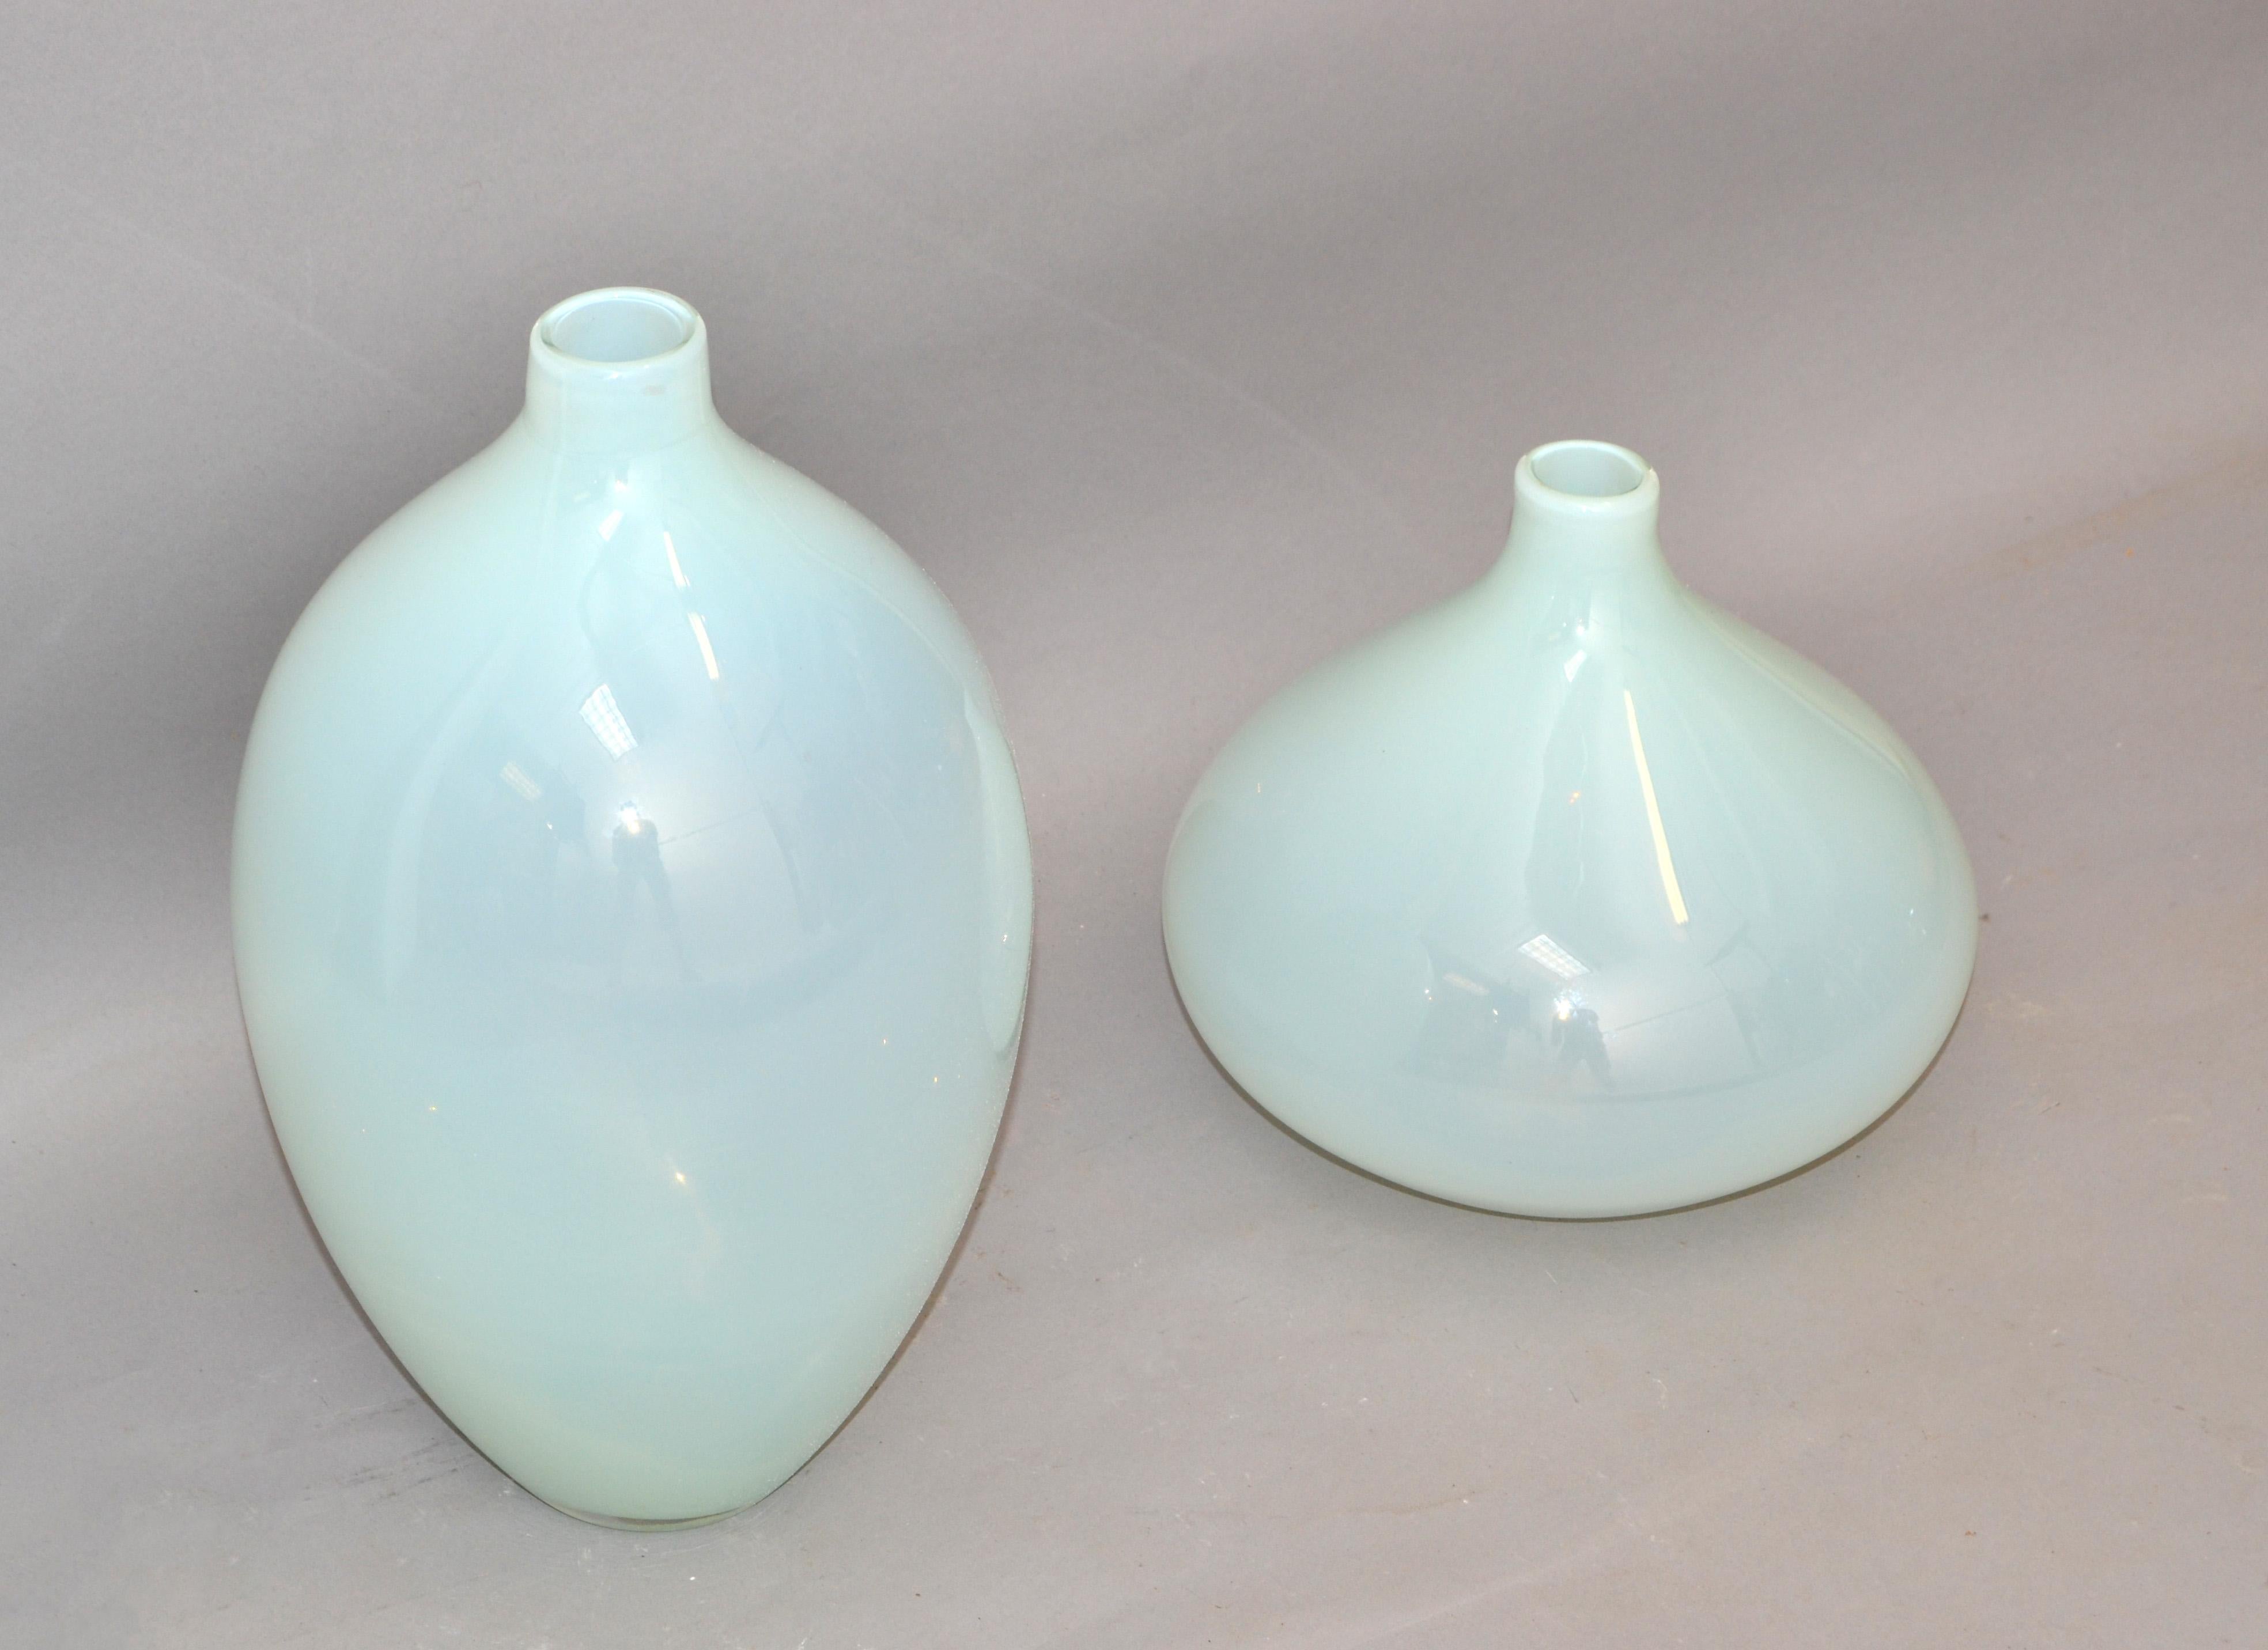 Satz von 2 durchscheinenden babyblauen Mid-Century Modern handgefertigten Glasgefäß, Vase, Dekanter im Stil von Blenko.
Runde Gefäße aus klarem und hellblauem Glas geblasen.
Die Kleinere Vase misst: 
Höhe: 8.5 Zoll.
Durchmesser: 9 Zoll.
Ideal für